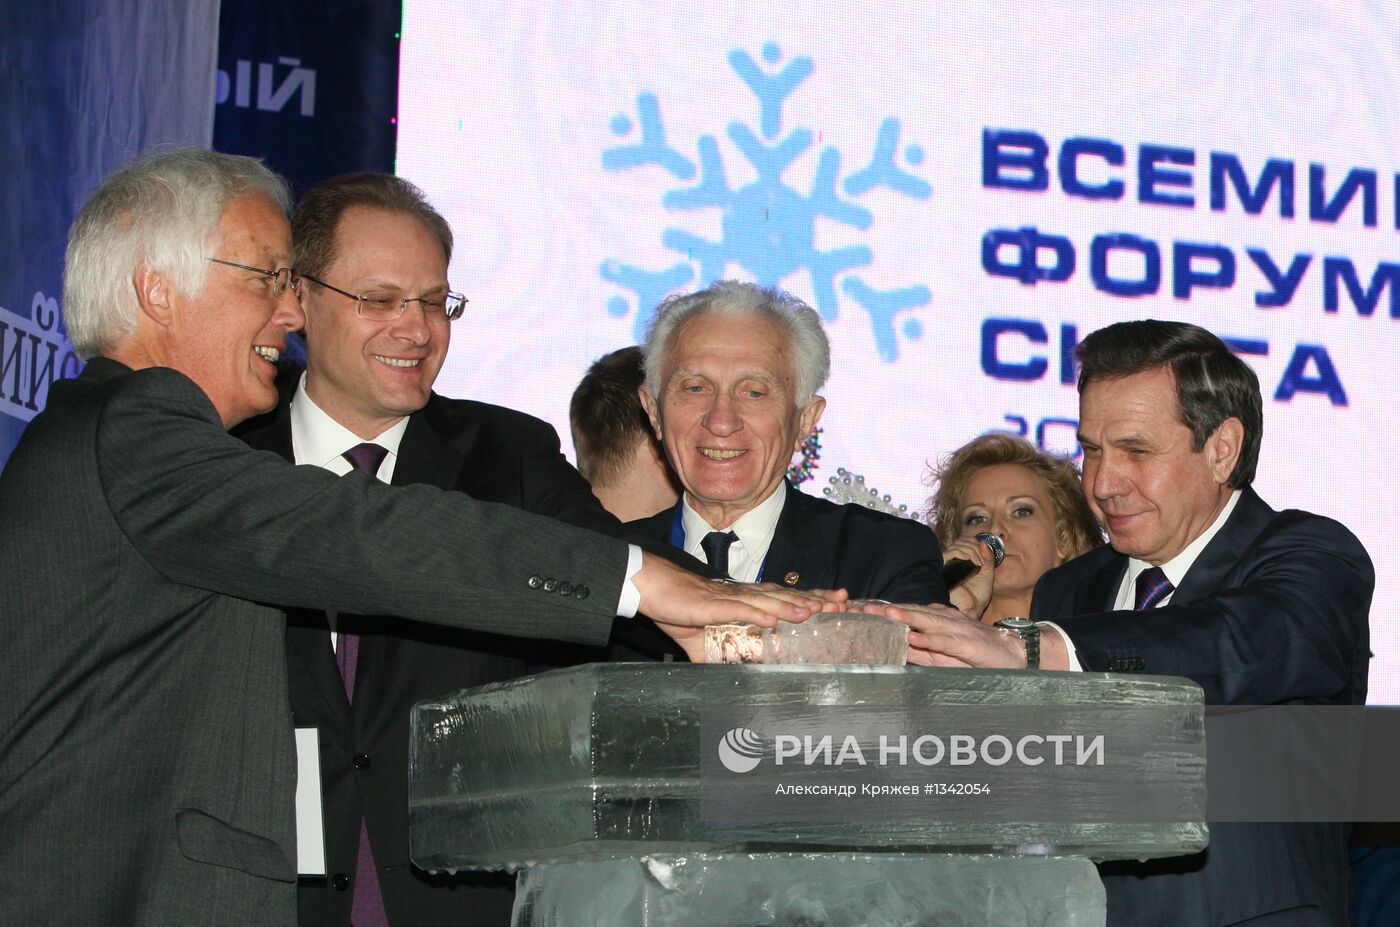 Всемирный форум снега в Новосибирске